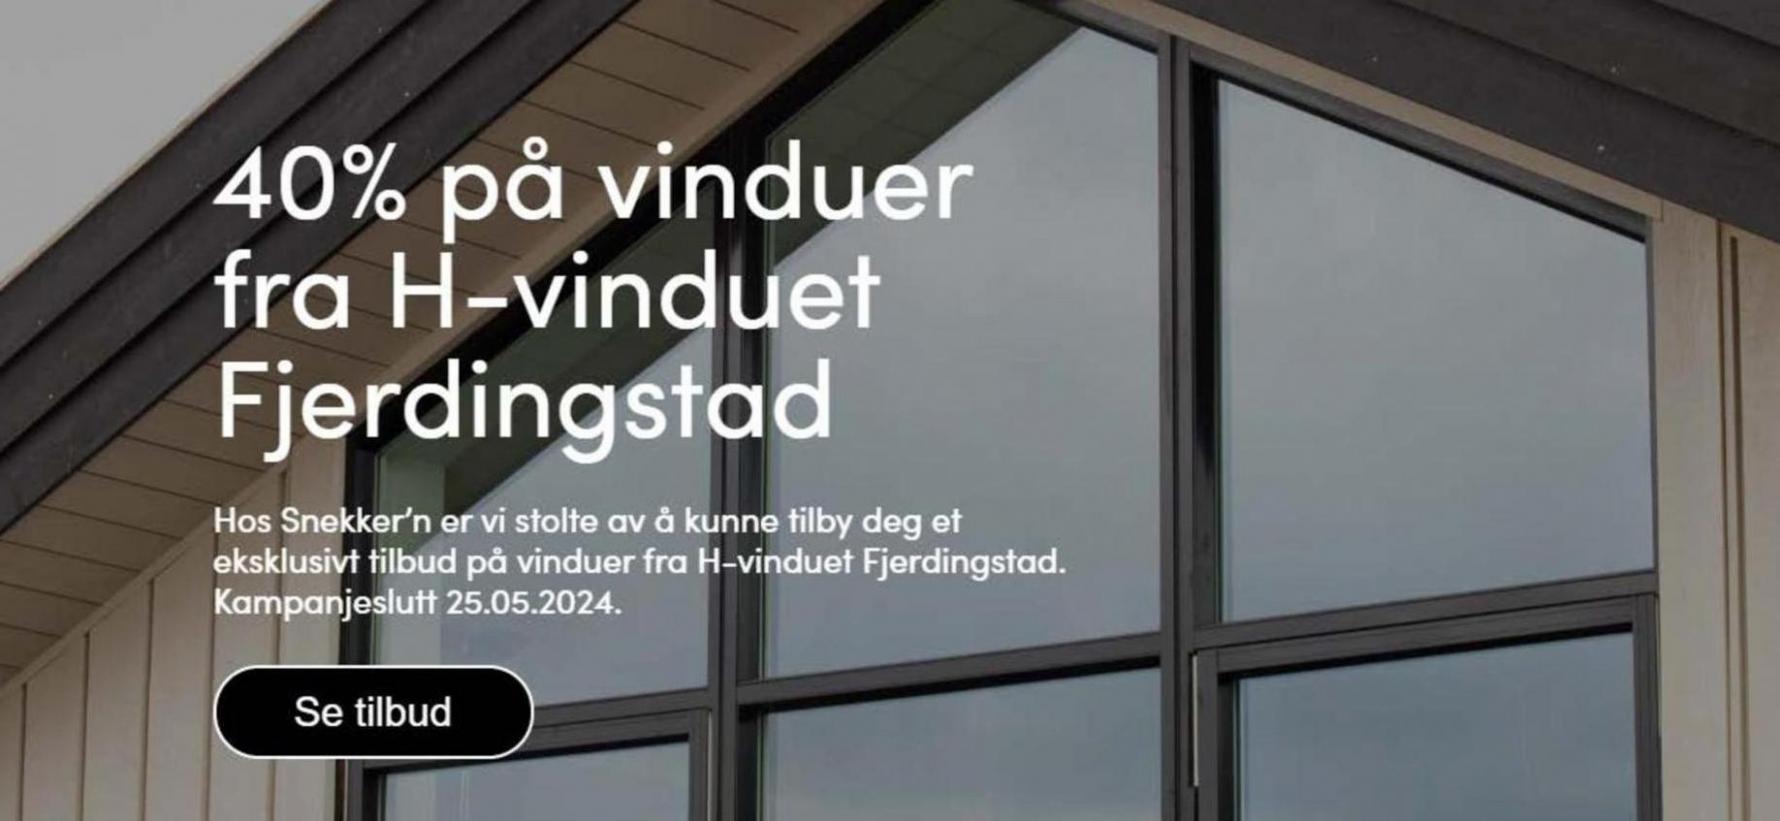 40% på vinduer fra H-vinduet Fjerdingstad. Snekker'n (2024-05-23-2024-05-23)